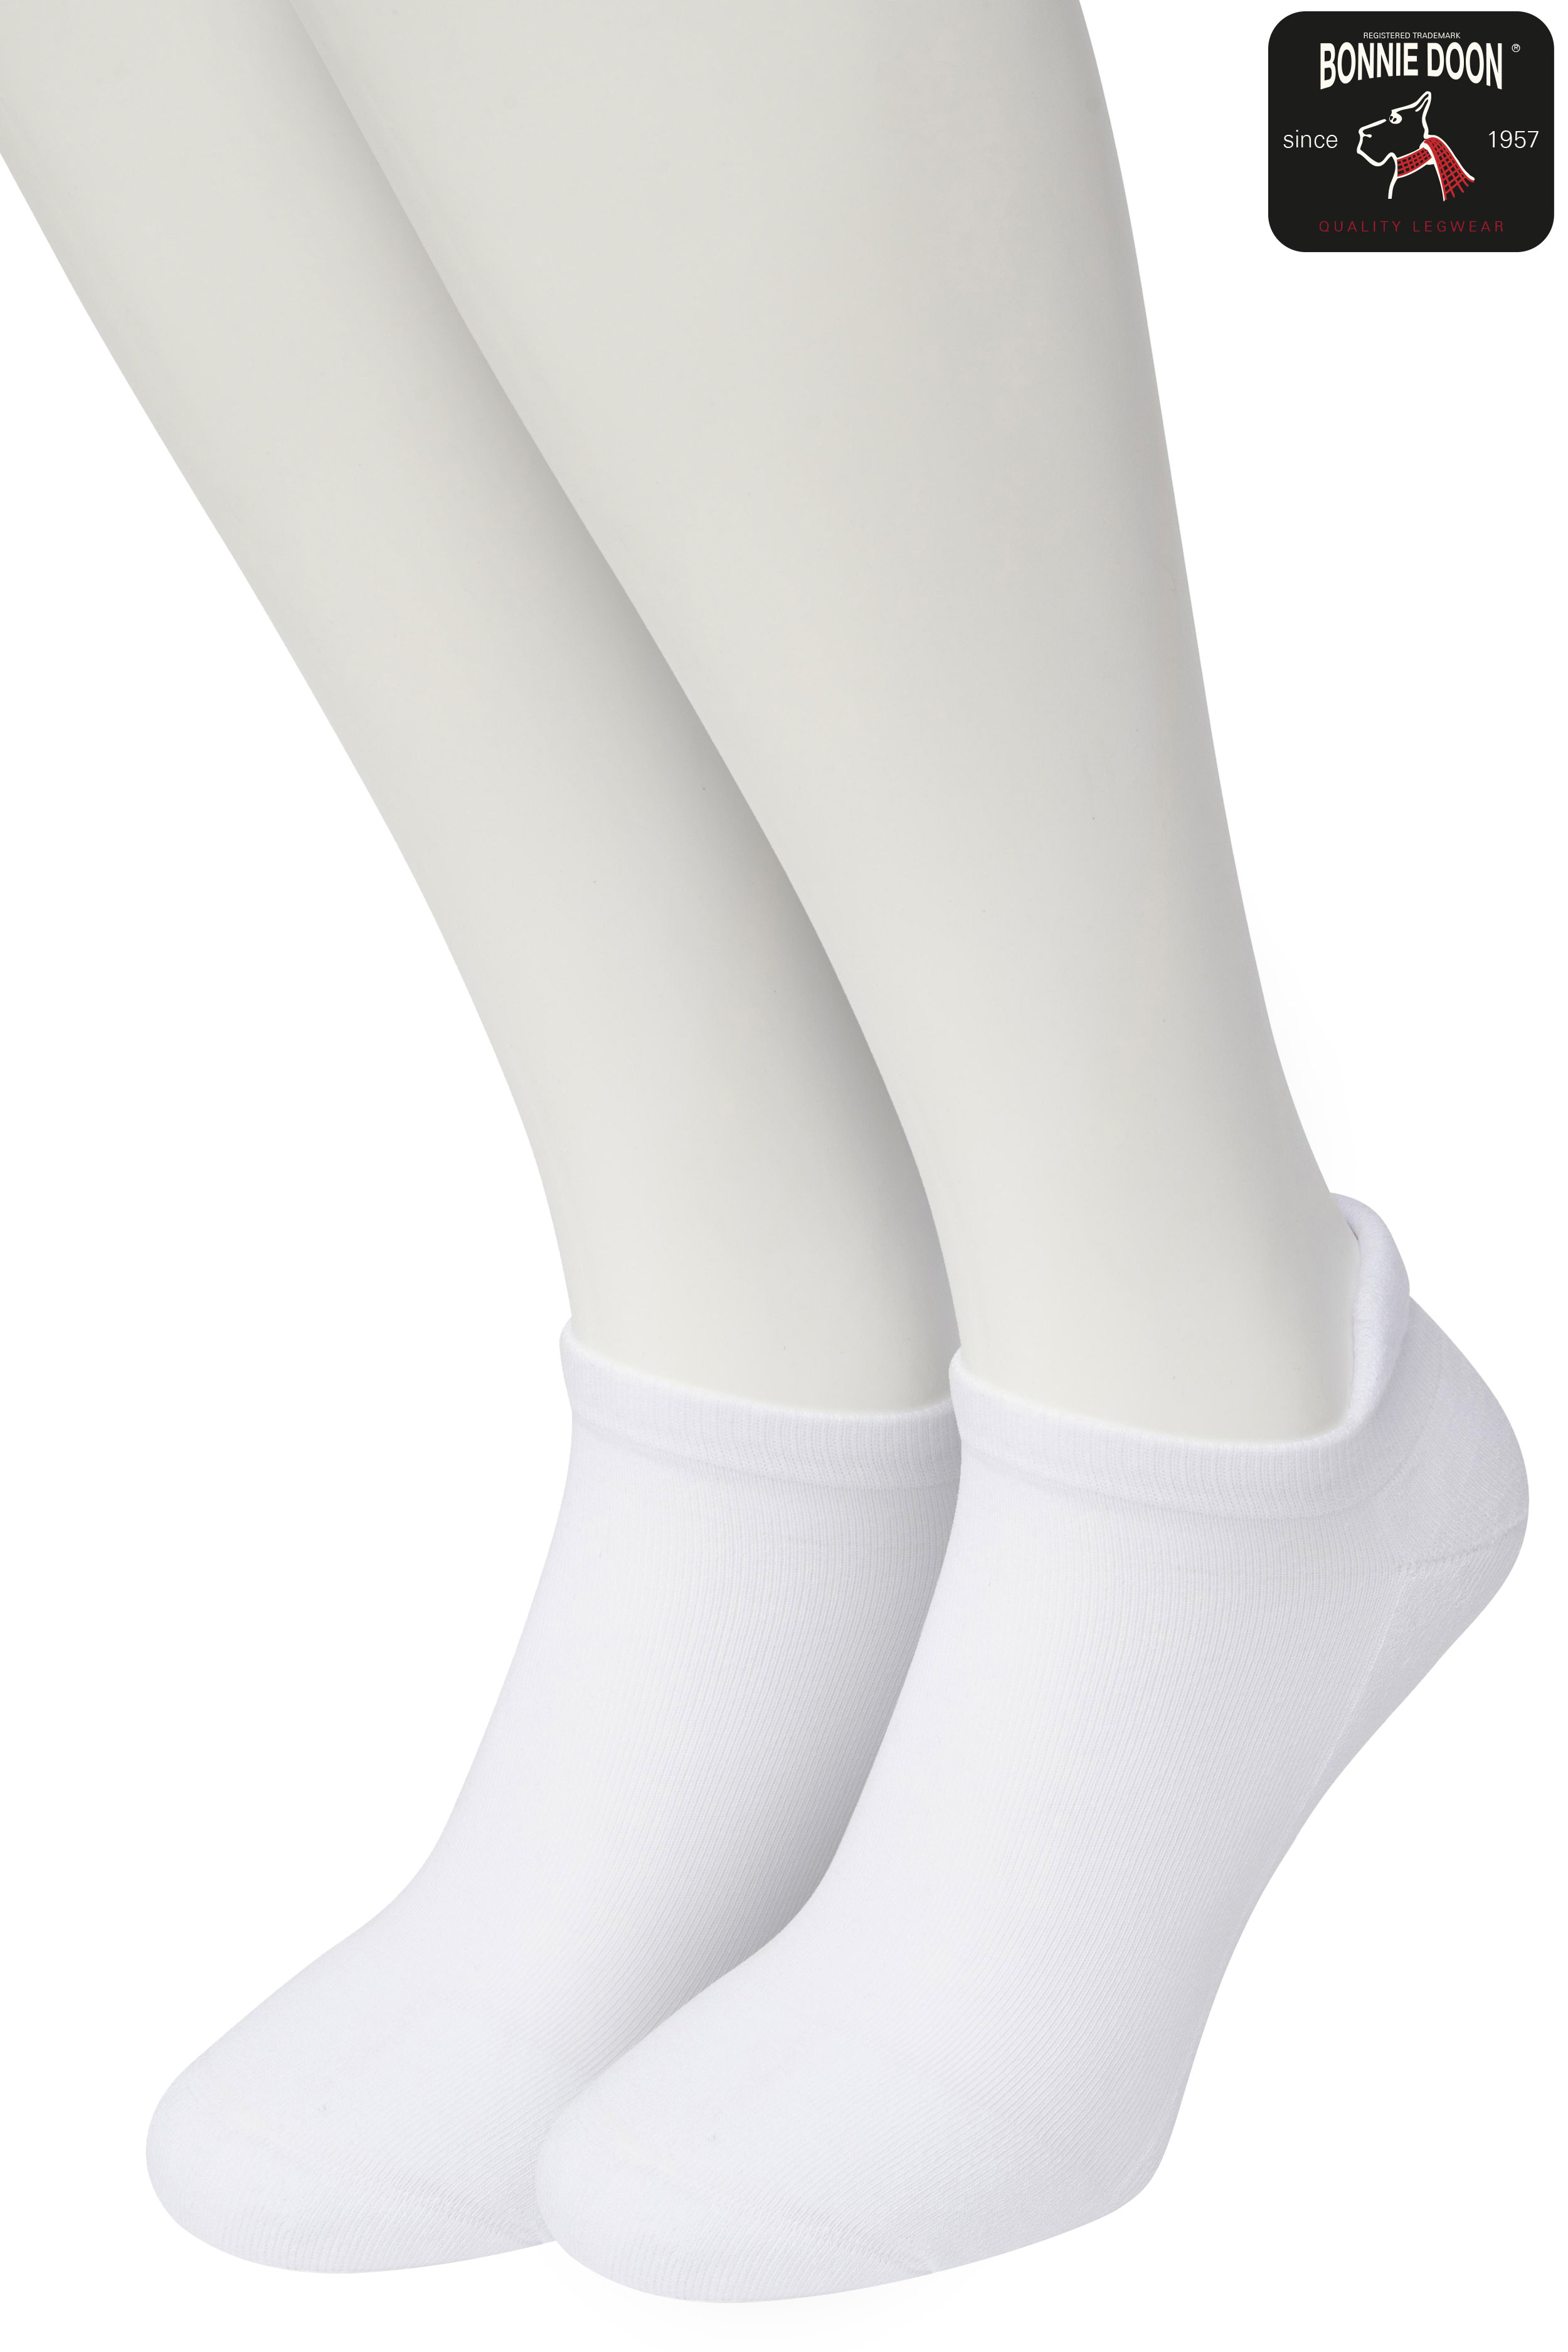 Cushion Short socks (2 paar) White white